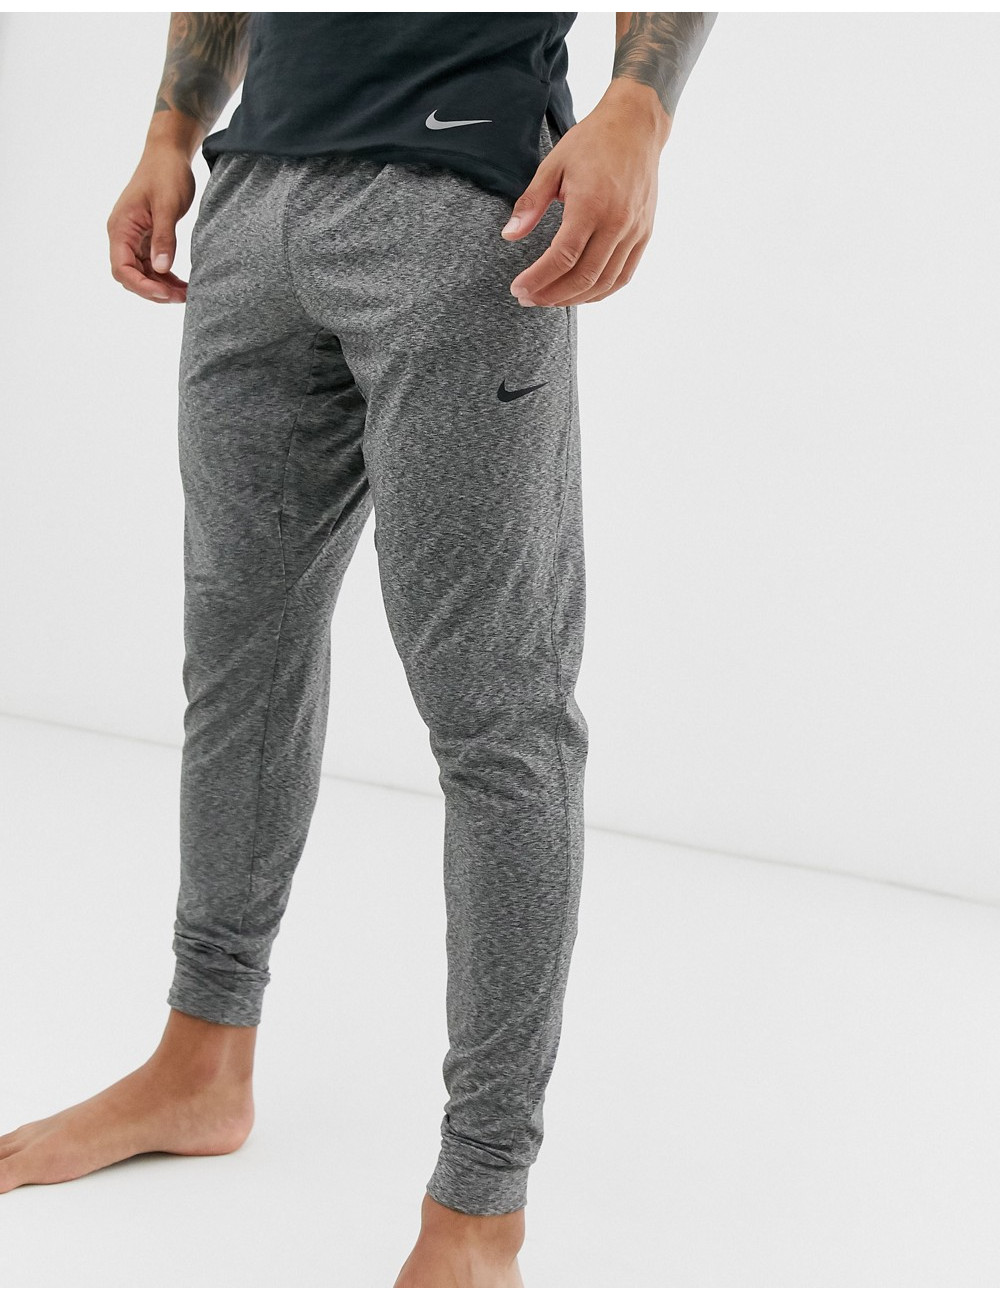 Nike Yoga joggers in grey